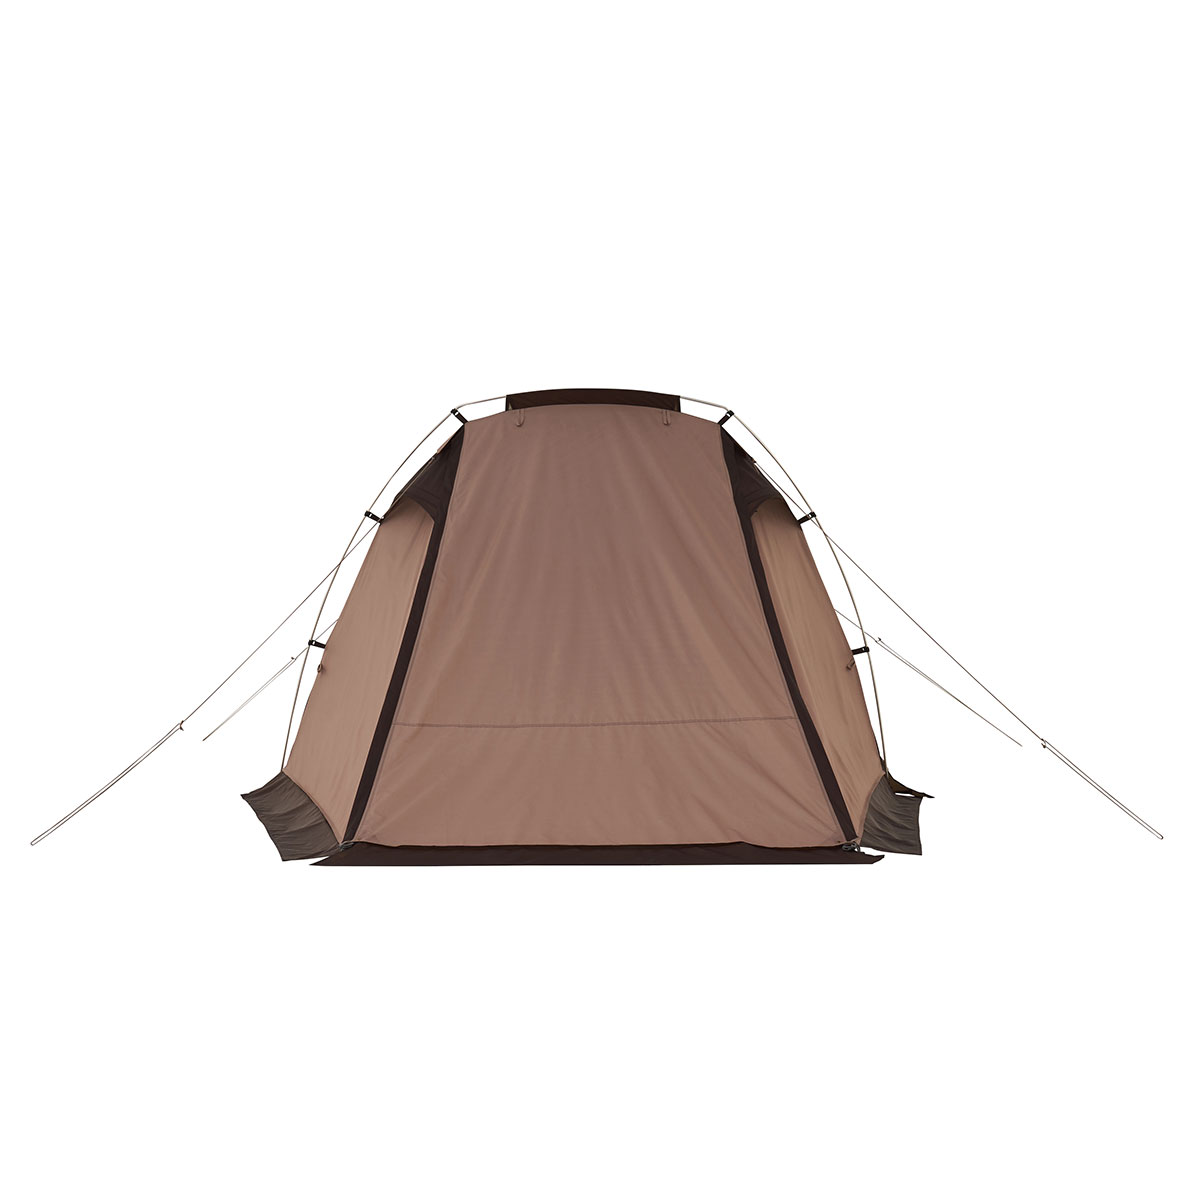 新しいスタイル キャンプテント テント LOGOS 送料無料【SP】 2人用テント ロゴス 71805556 ツーリングドゥーブル・DUO-BJ Tradcanvas 2人用 テント